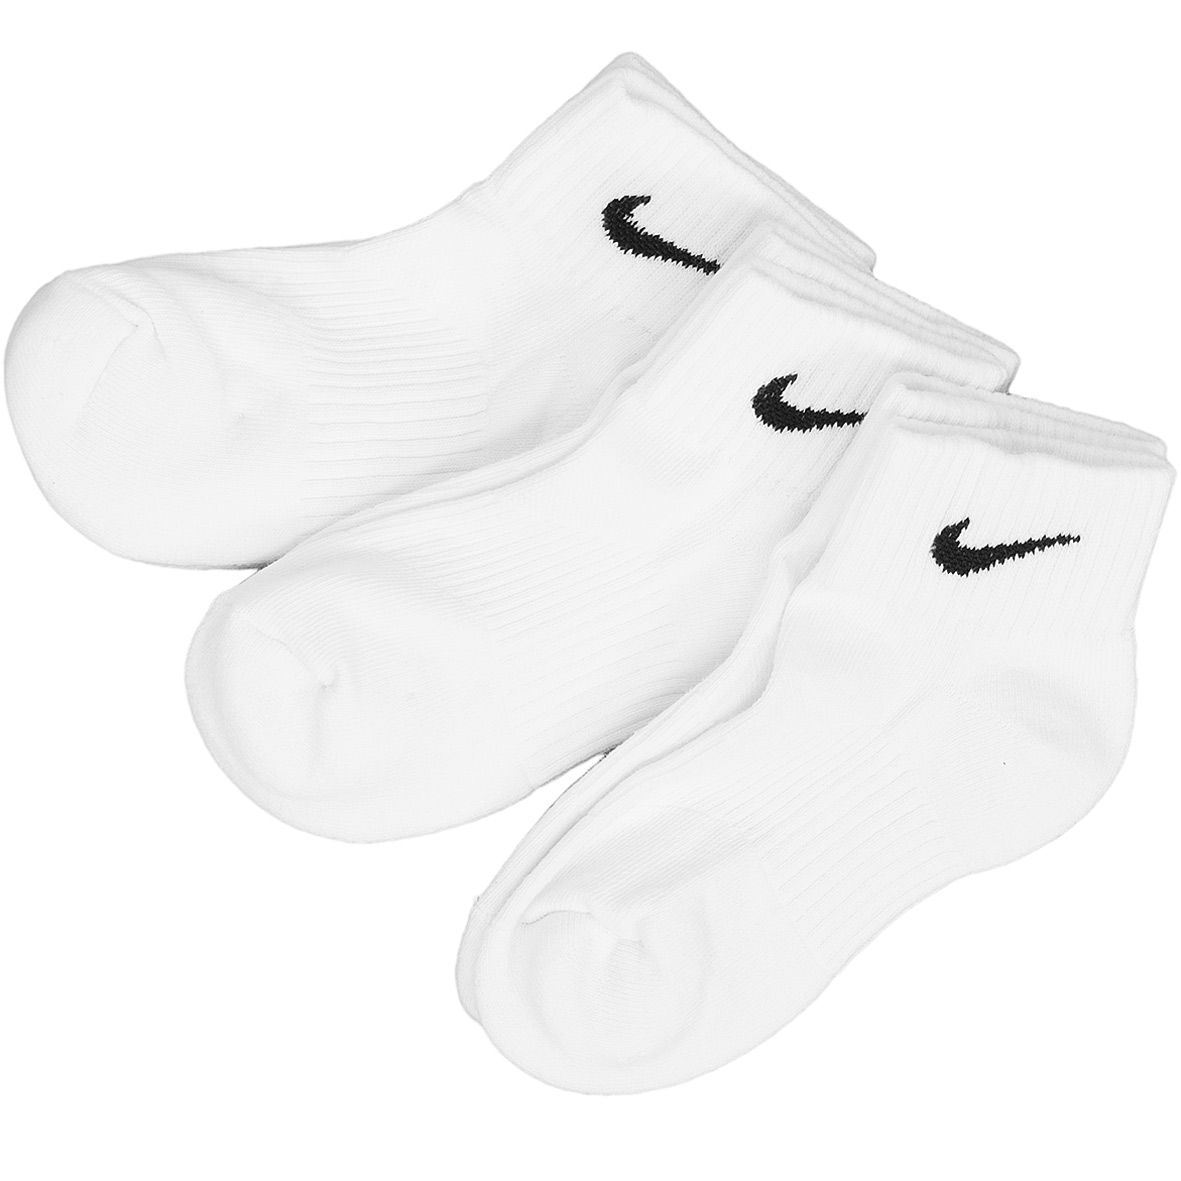 ☆ Nike Socken Cotton Cushion Quarter 3er weiß/schwarz - hier bestellen!